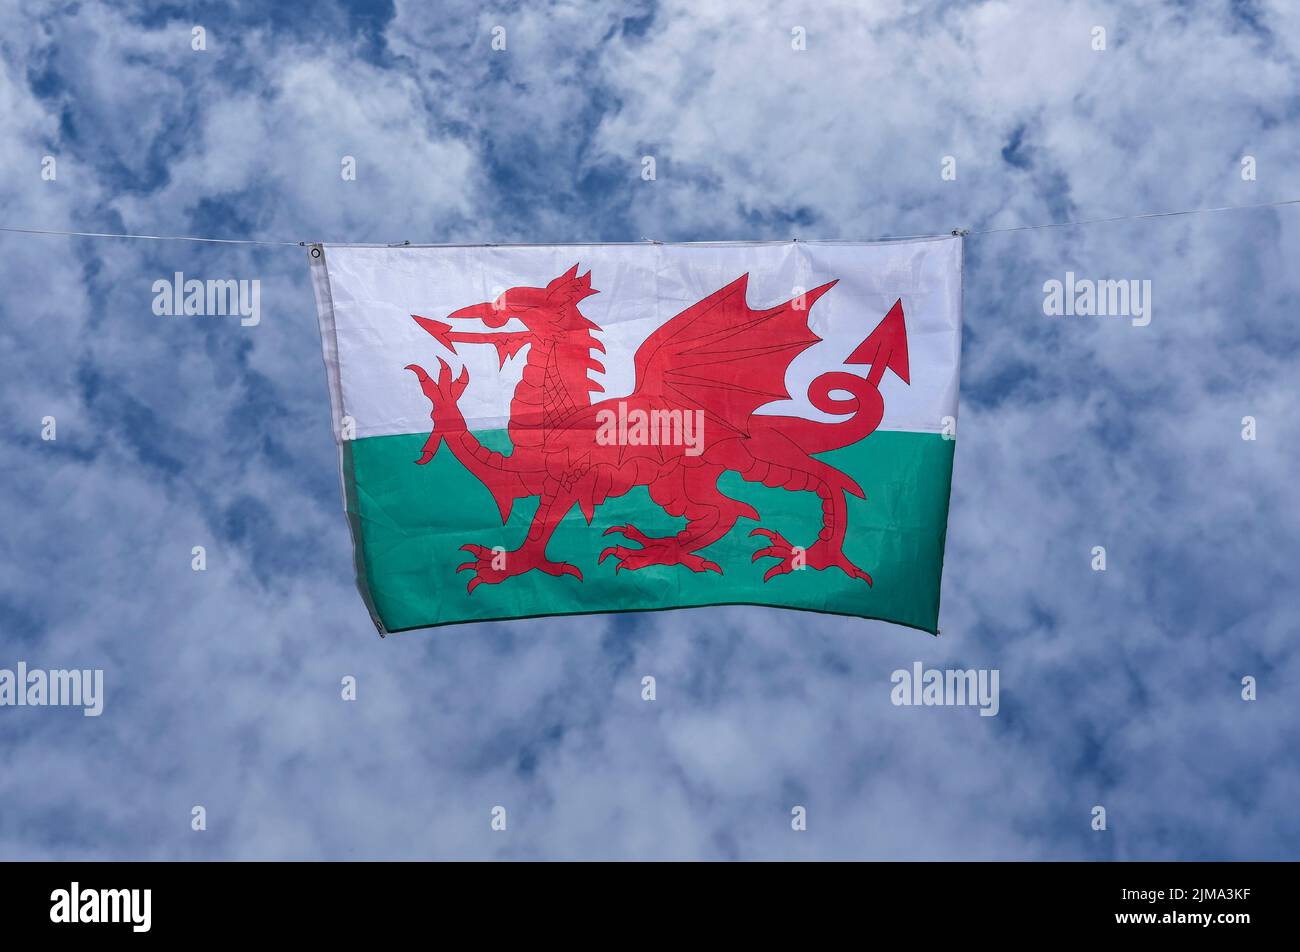 Drapeau national gallois montrant le dragon rouge du pays de Galles, Royaume-Uni sur ciel bleu Banque D'Images